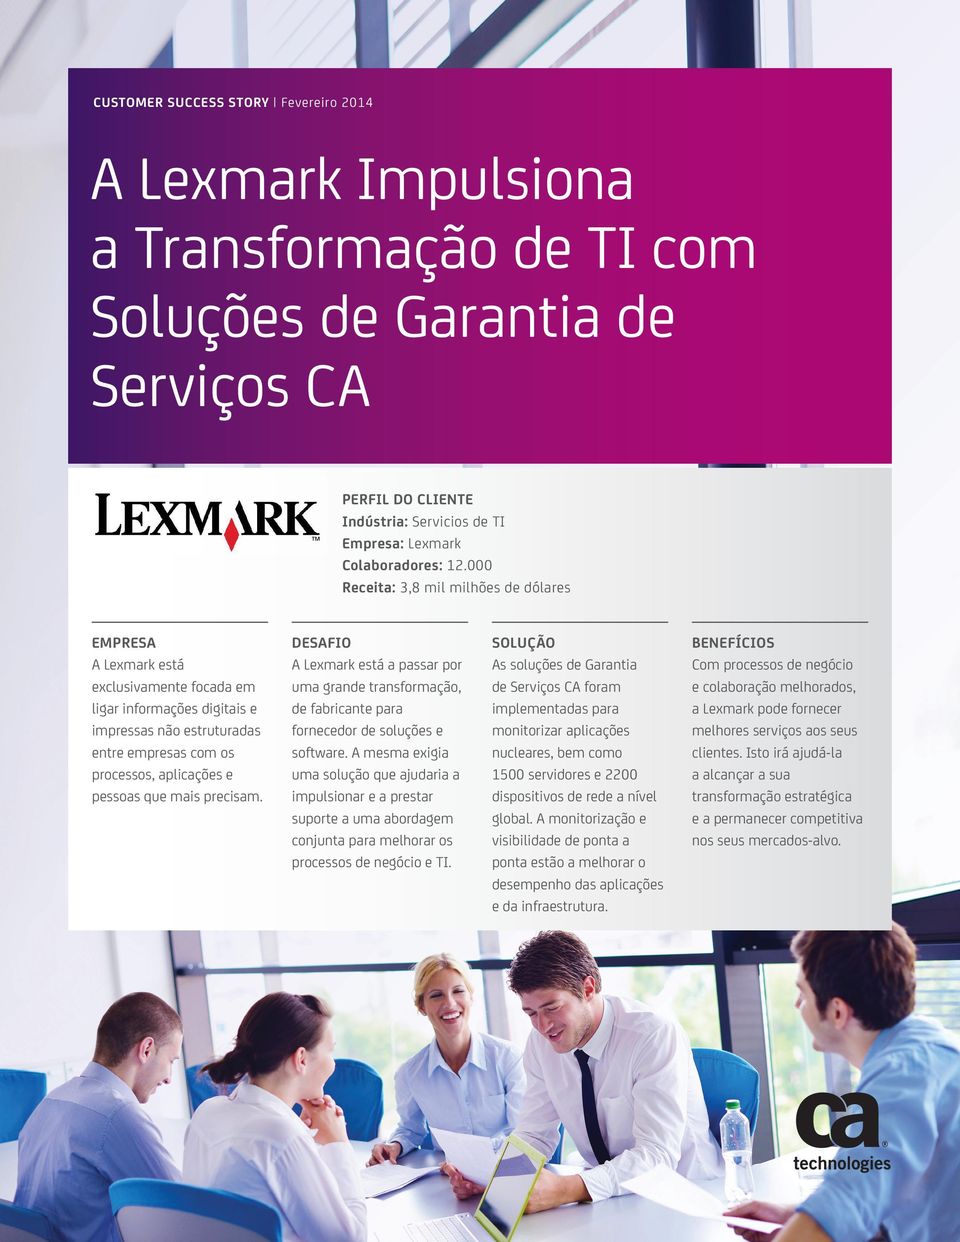 pessoas que mais precisam. DESAFIO A Lexmark está a passar por uma grande transformação, de fabricante para fornecedor de soluções e software.